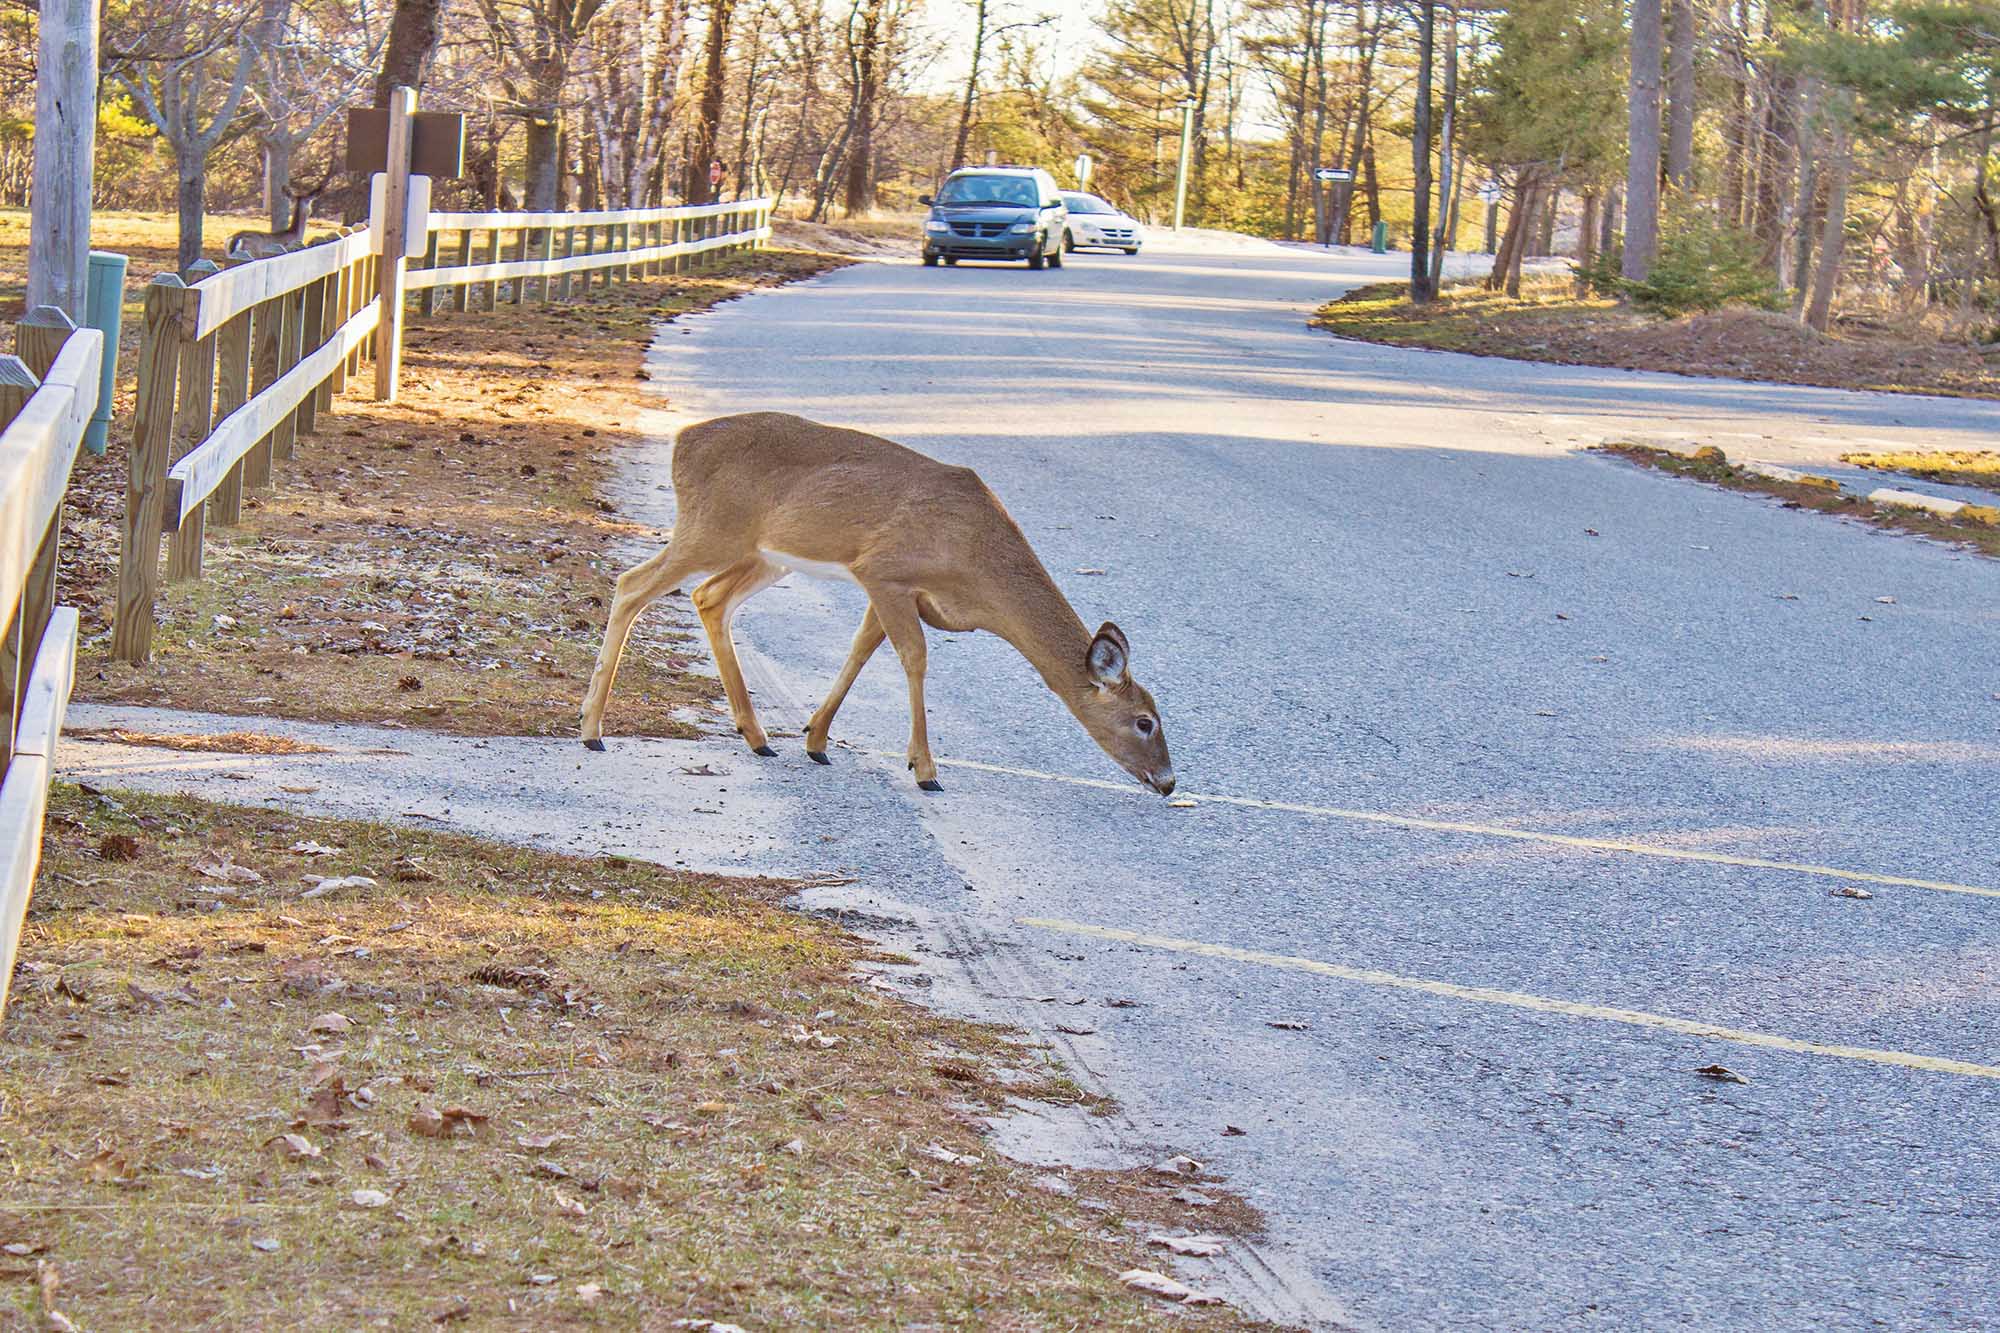 Deer in road as vehicles approach